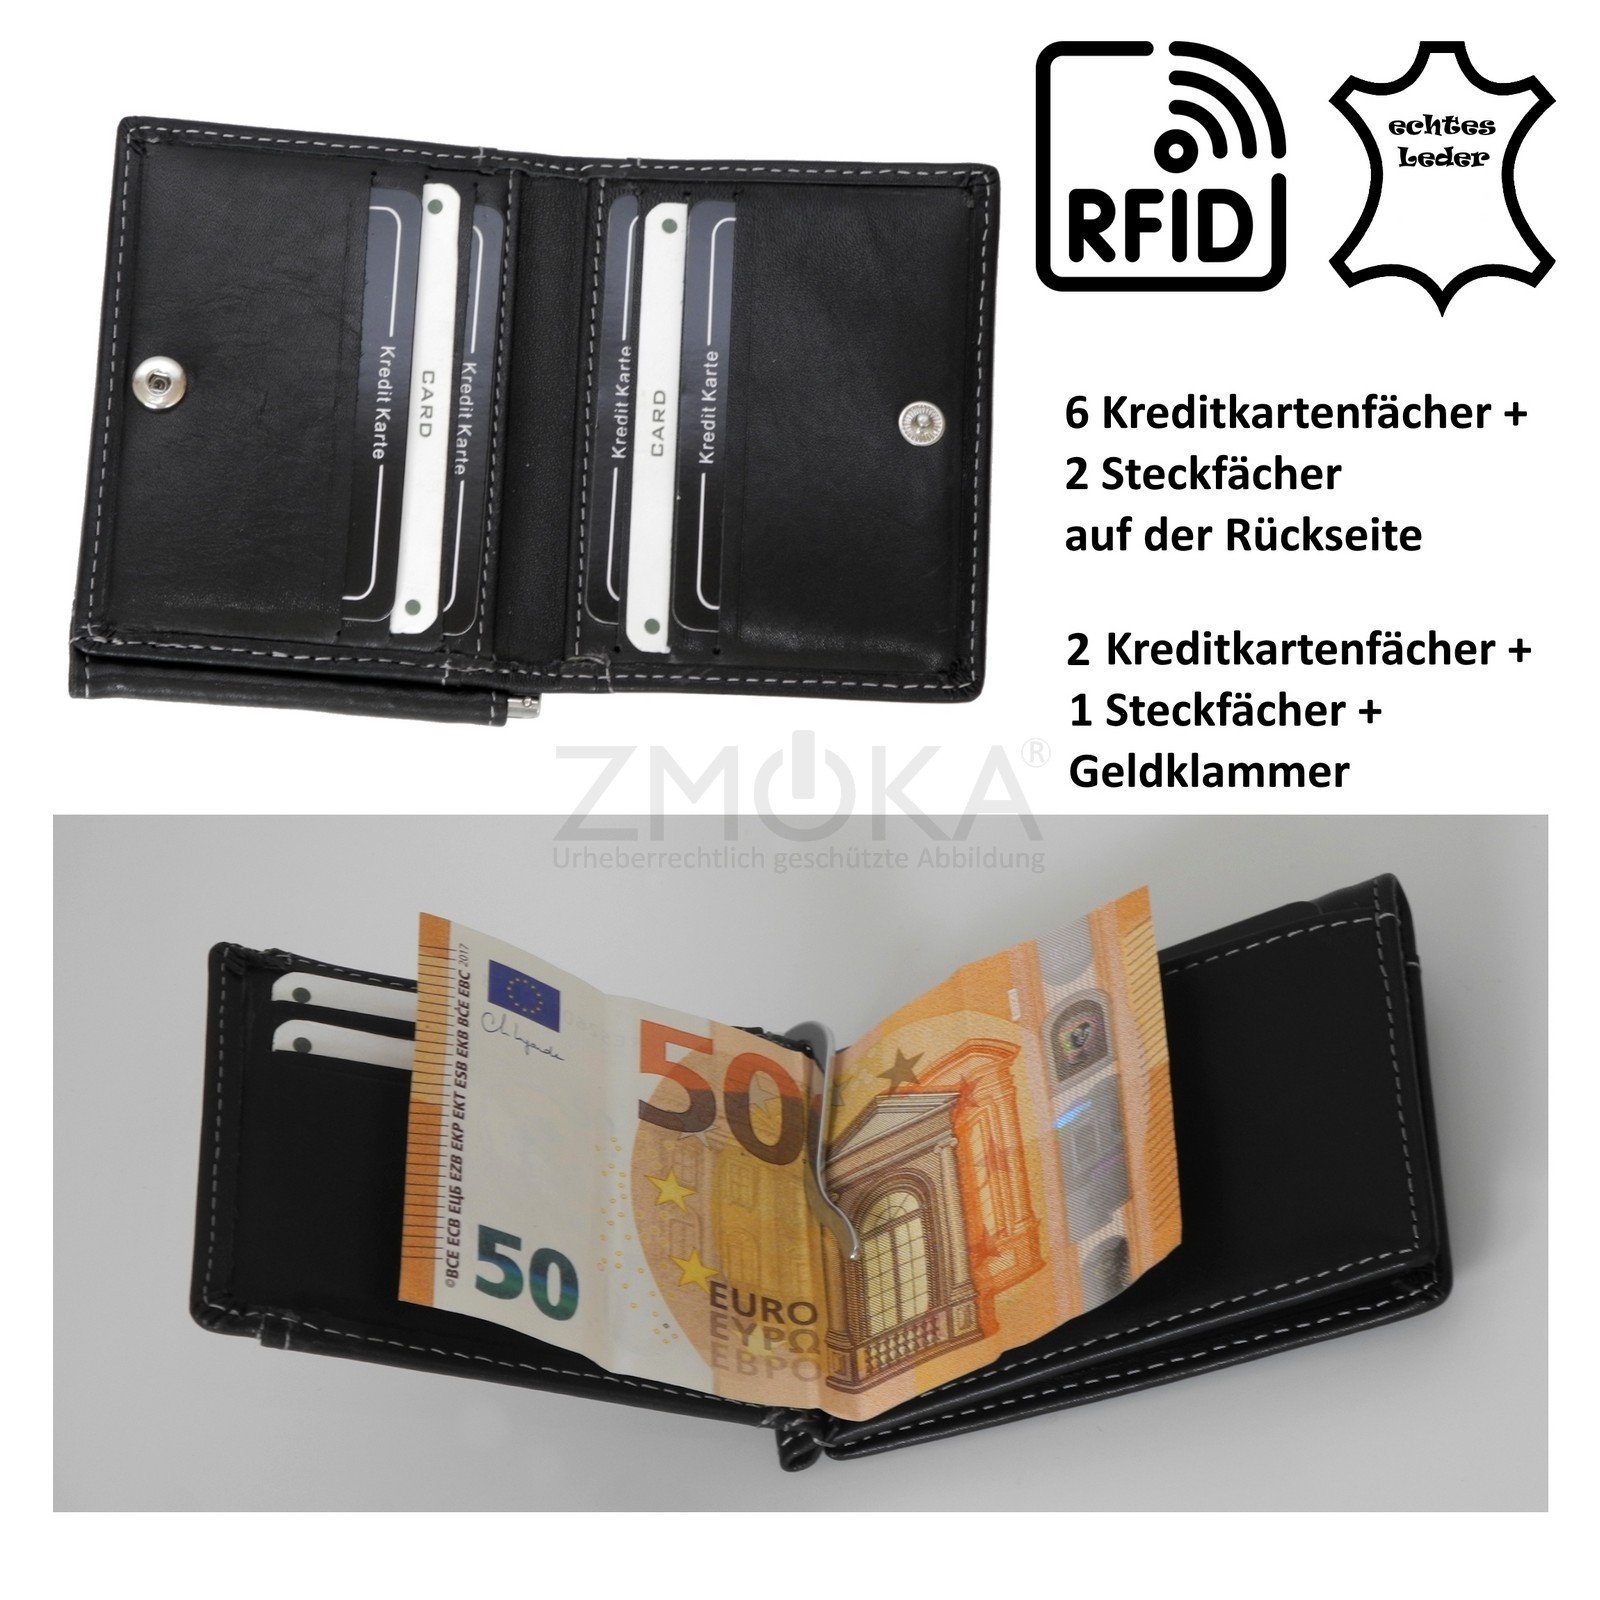 Only - Only Wild safe Auswahl Geldklammer RFID Things !!! Schwarz Things Geldbörse Leder Geldbörse Wild